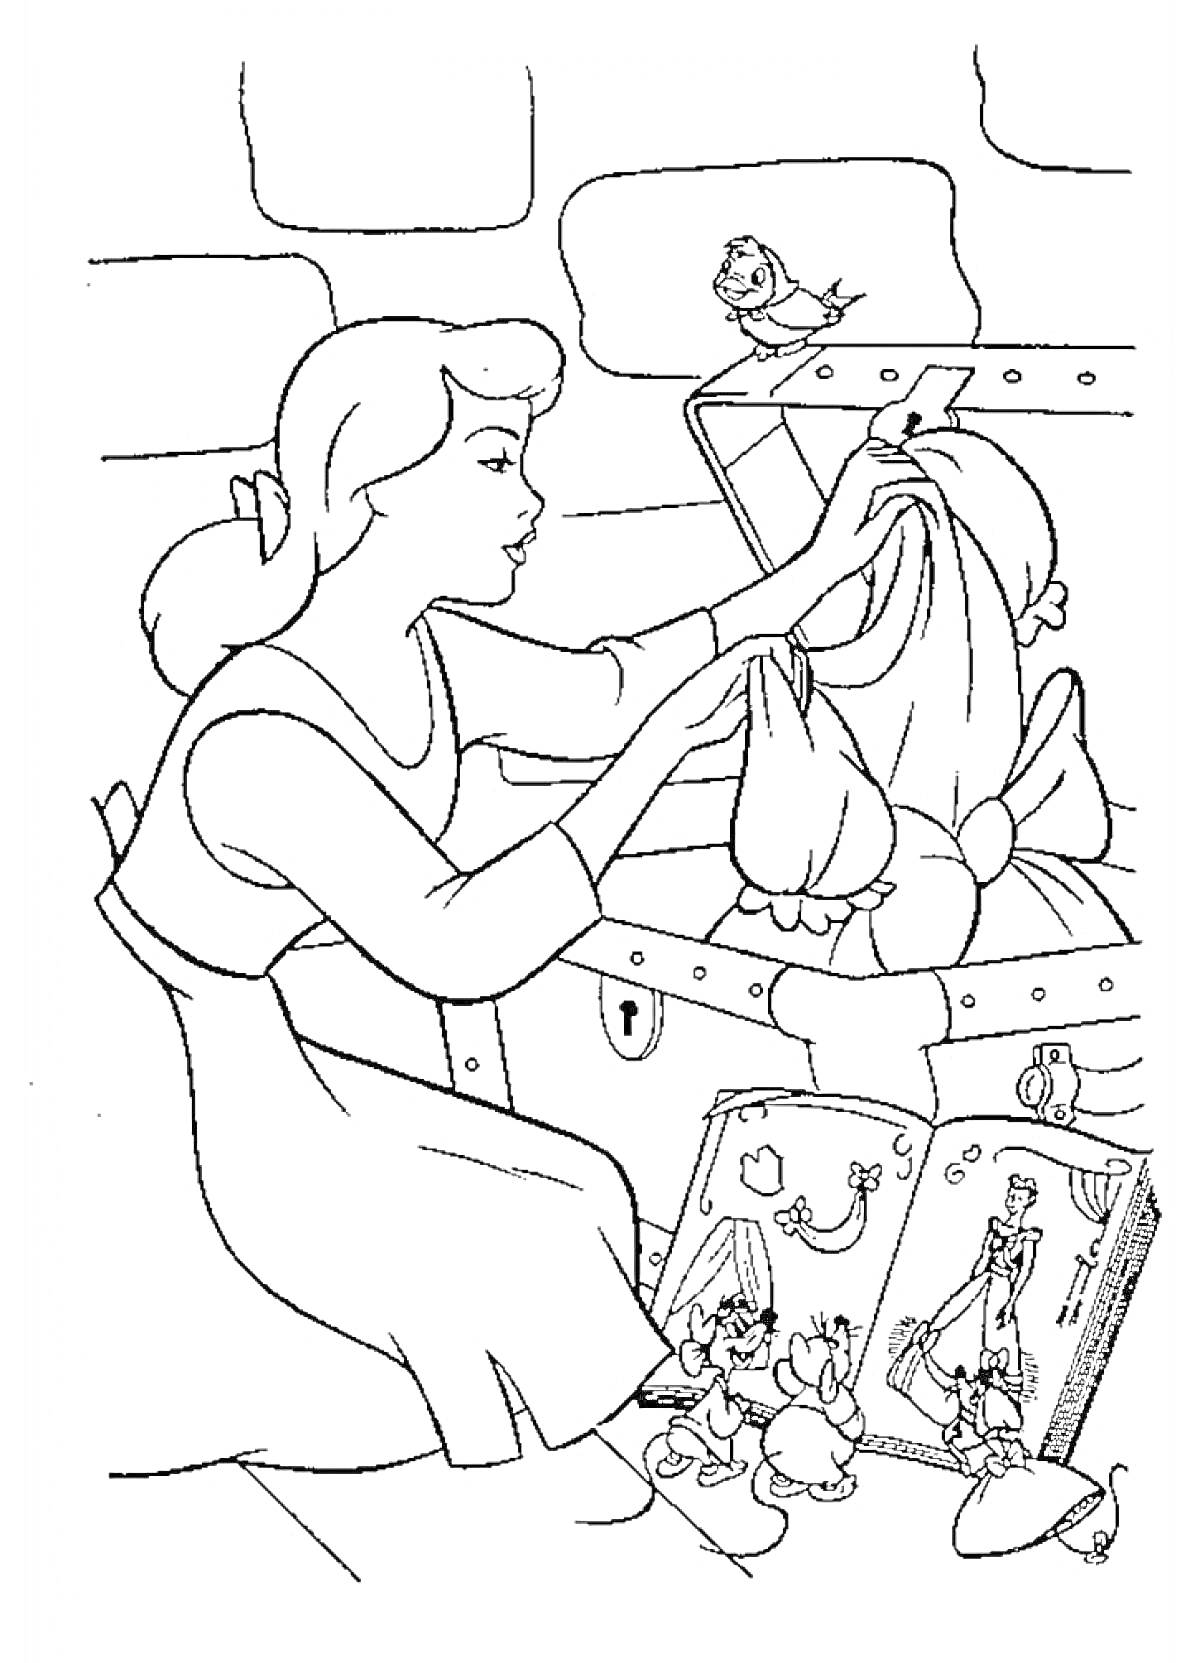 Золушка, сидящая перед сундуком с платьем, рядом книги, мыши и птица